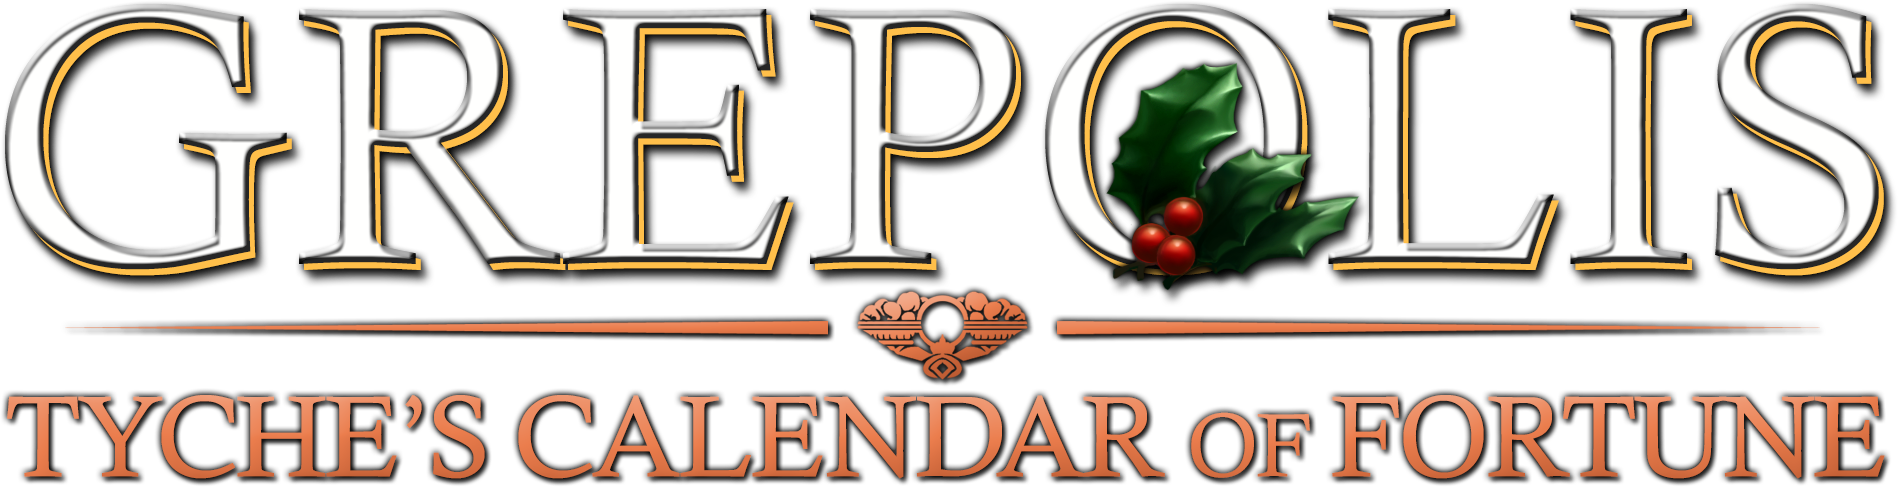 Christmas2013_logo.png